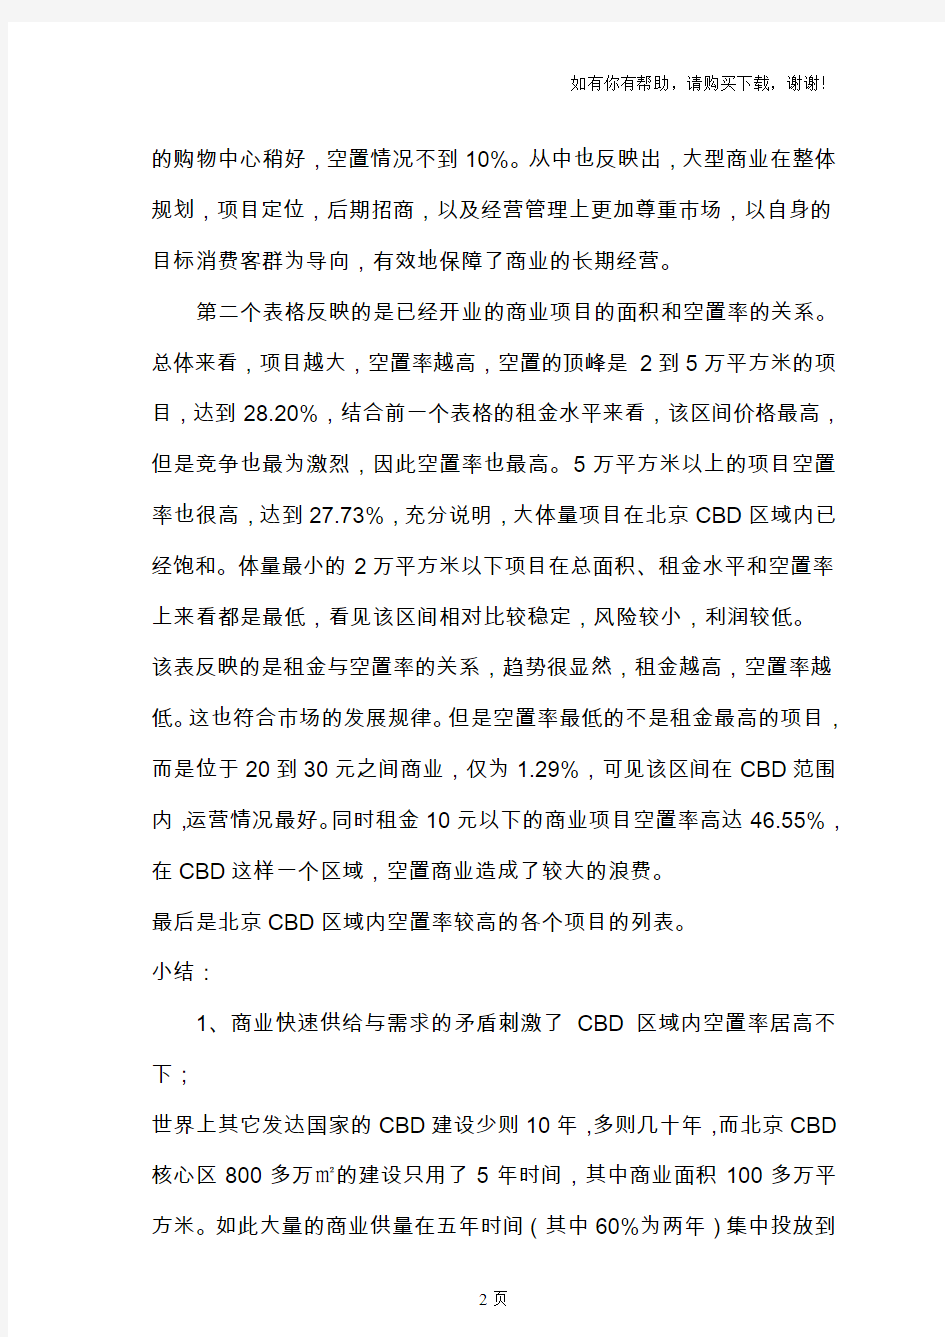 北京市CBD商业空置率调查分析报告